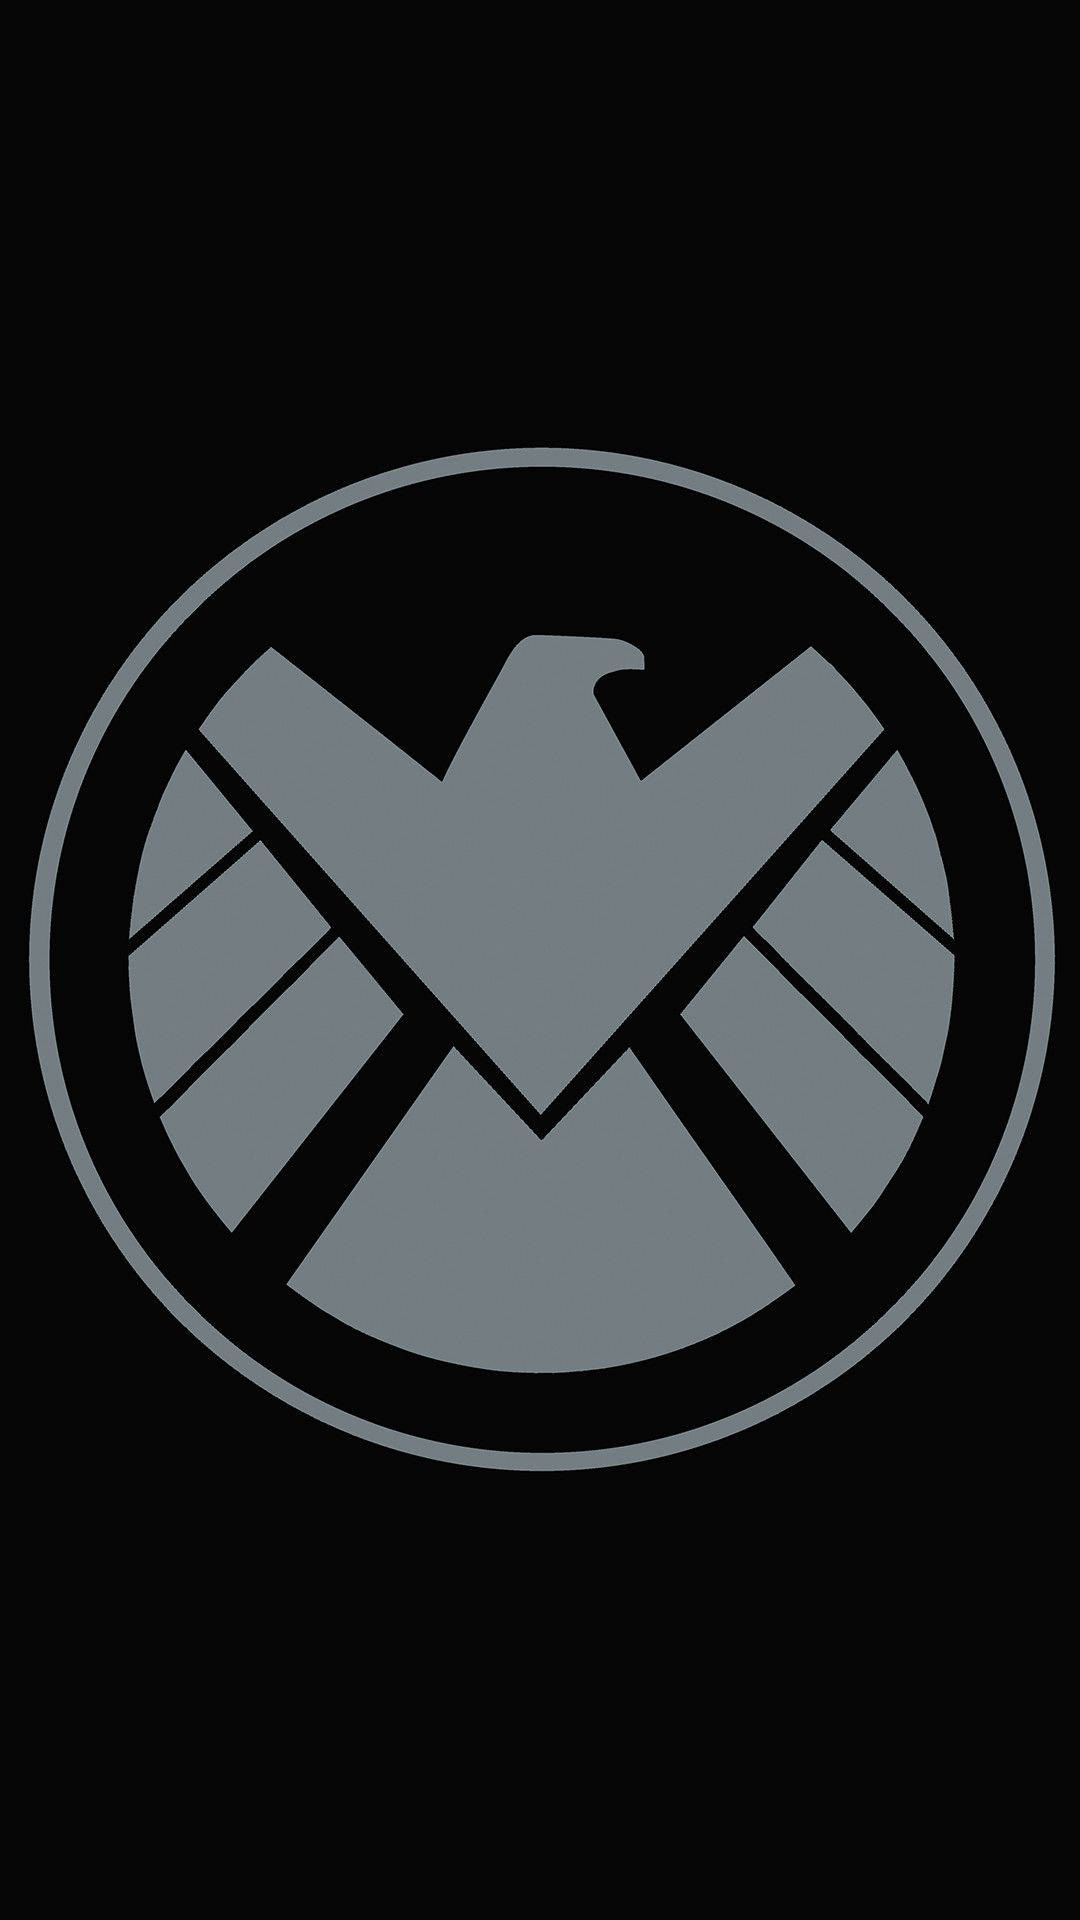 Papelde Parede Para Celular: Escudo Dos Vingadores Com O Logo Da Marvel. Papel de Parede